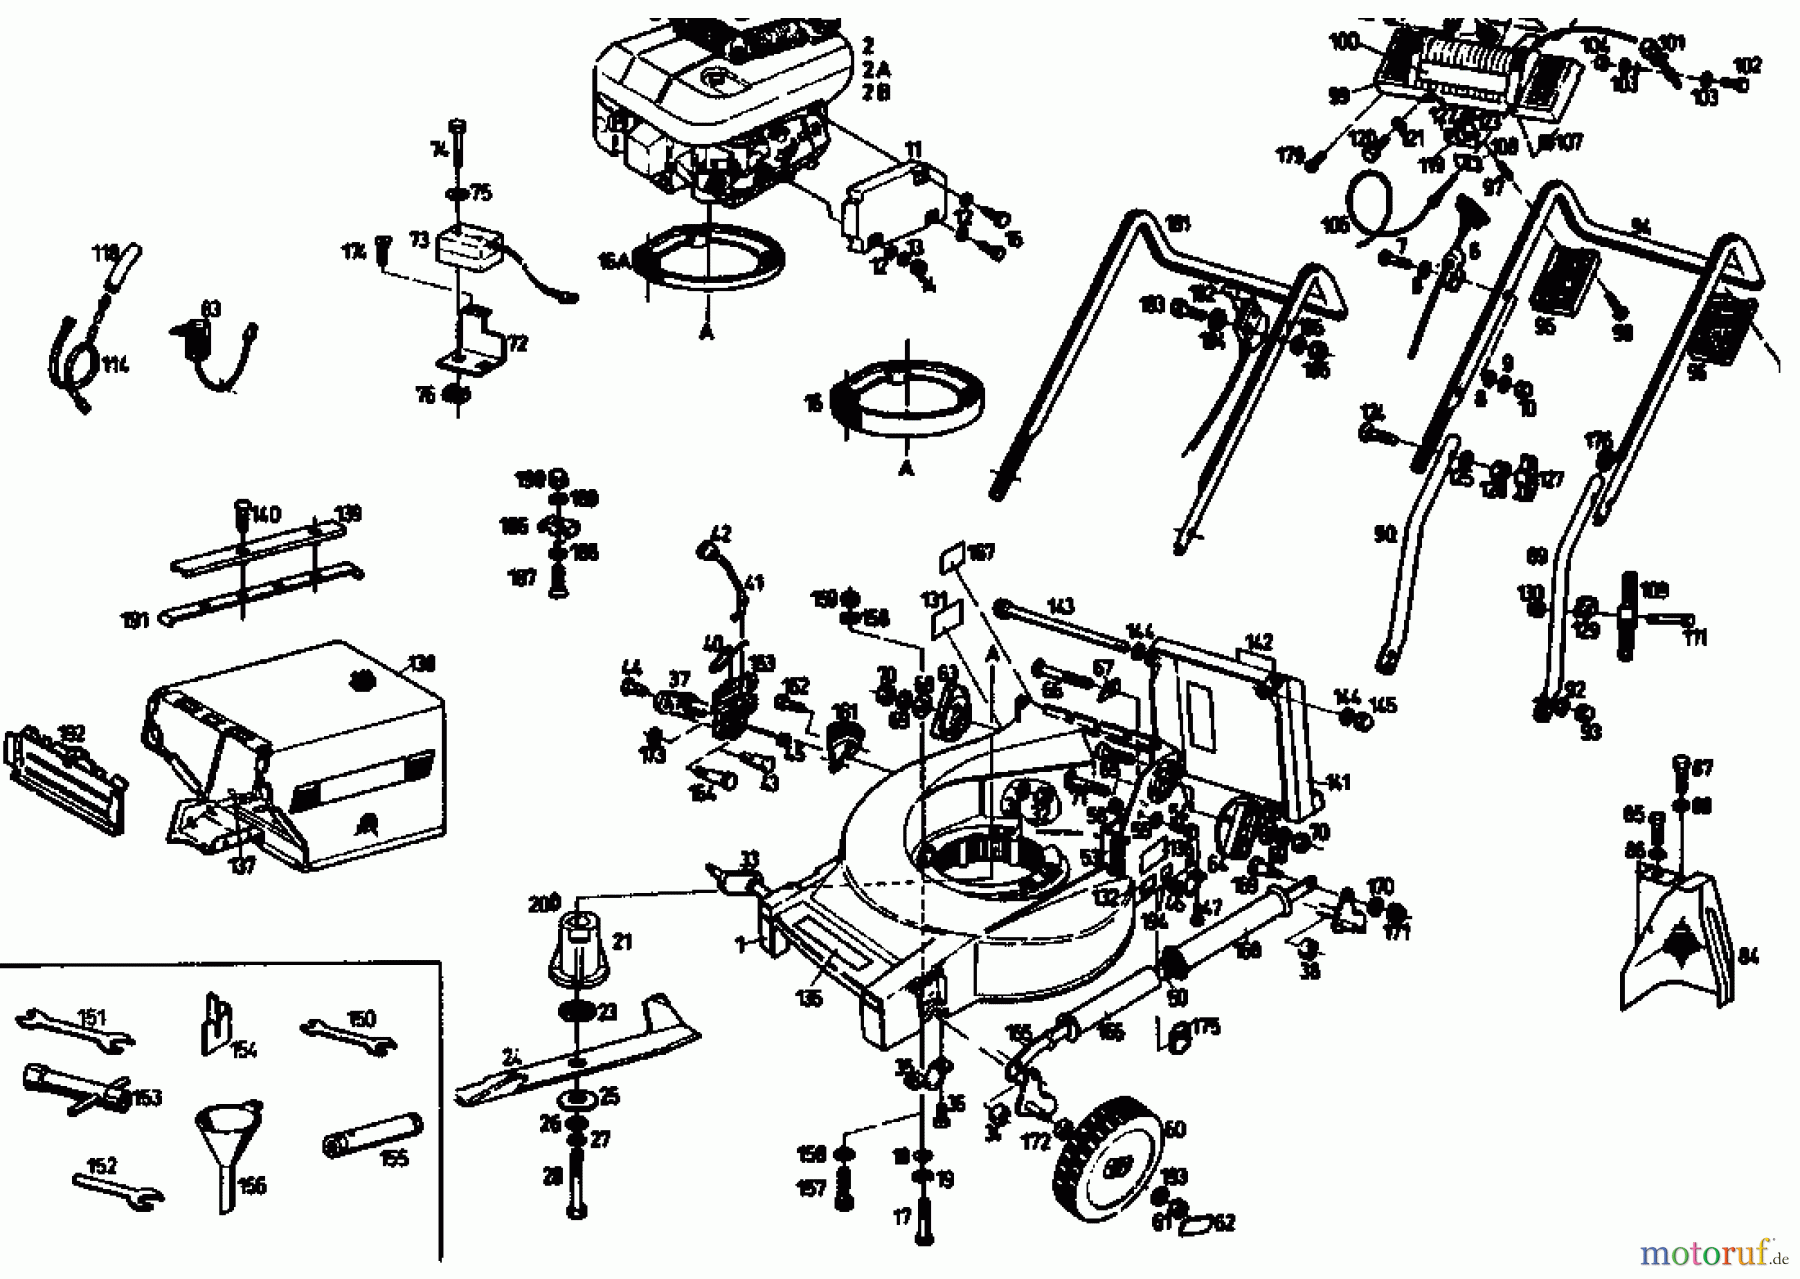  Gutbrod Tondeuse thermique MH 454 04004.05  (1992) Machine de base